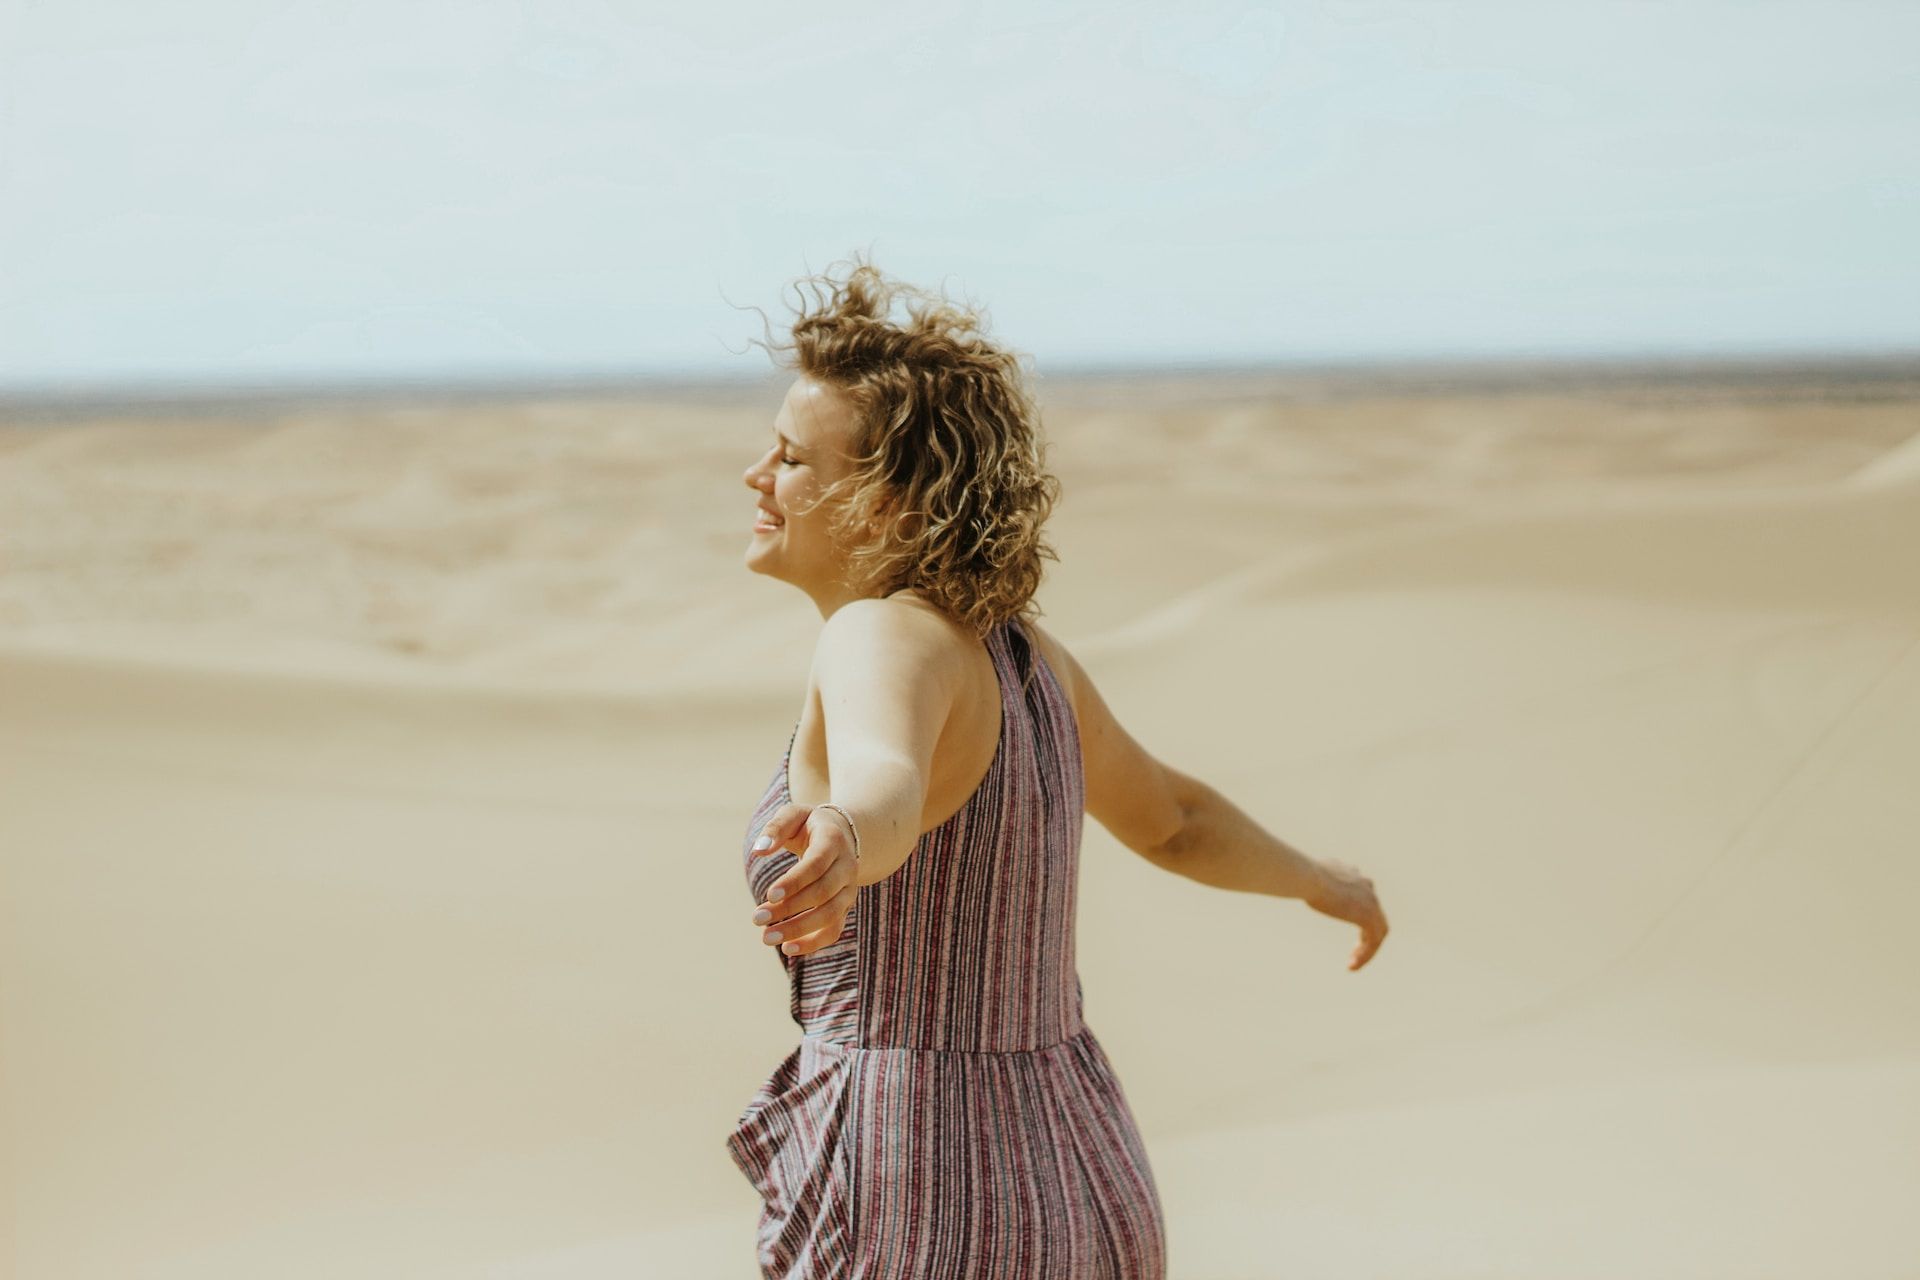 femme sur la place écartant les bras et prenant l'air marin sur son visage - Photo by Tori Wise on https://unsplash.com/fr/photos/femme-en-robe-debardeur-a-rayures-blanches-et-violettes-debout-sur-le-sable-brun-pendant-la-journee-h66XccaKuyI